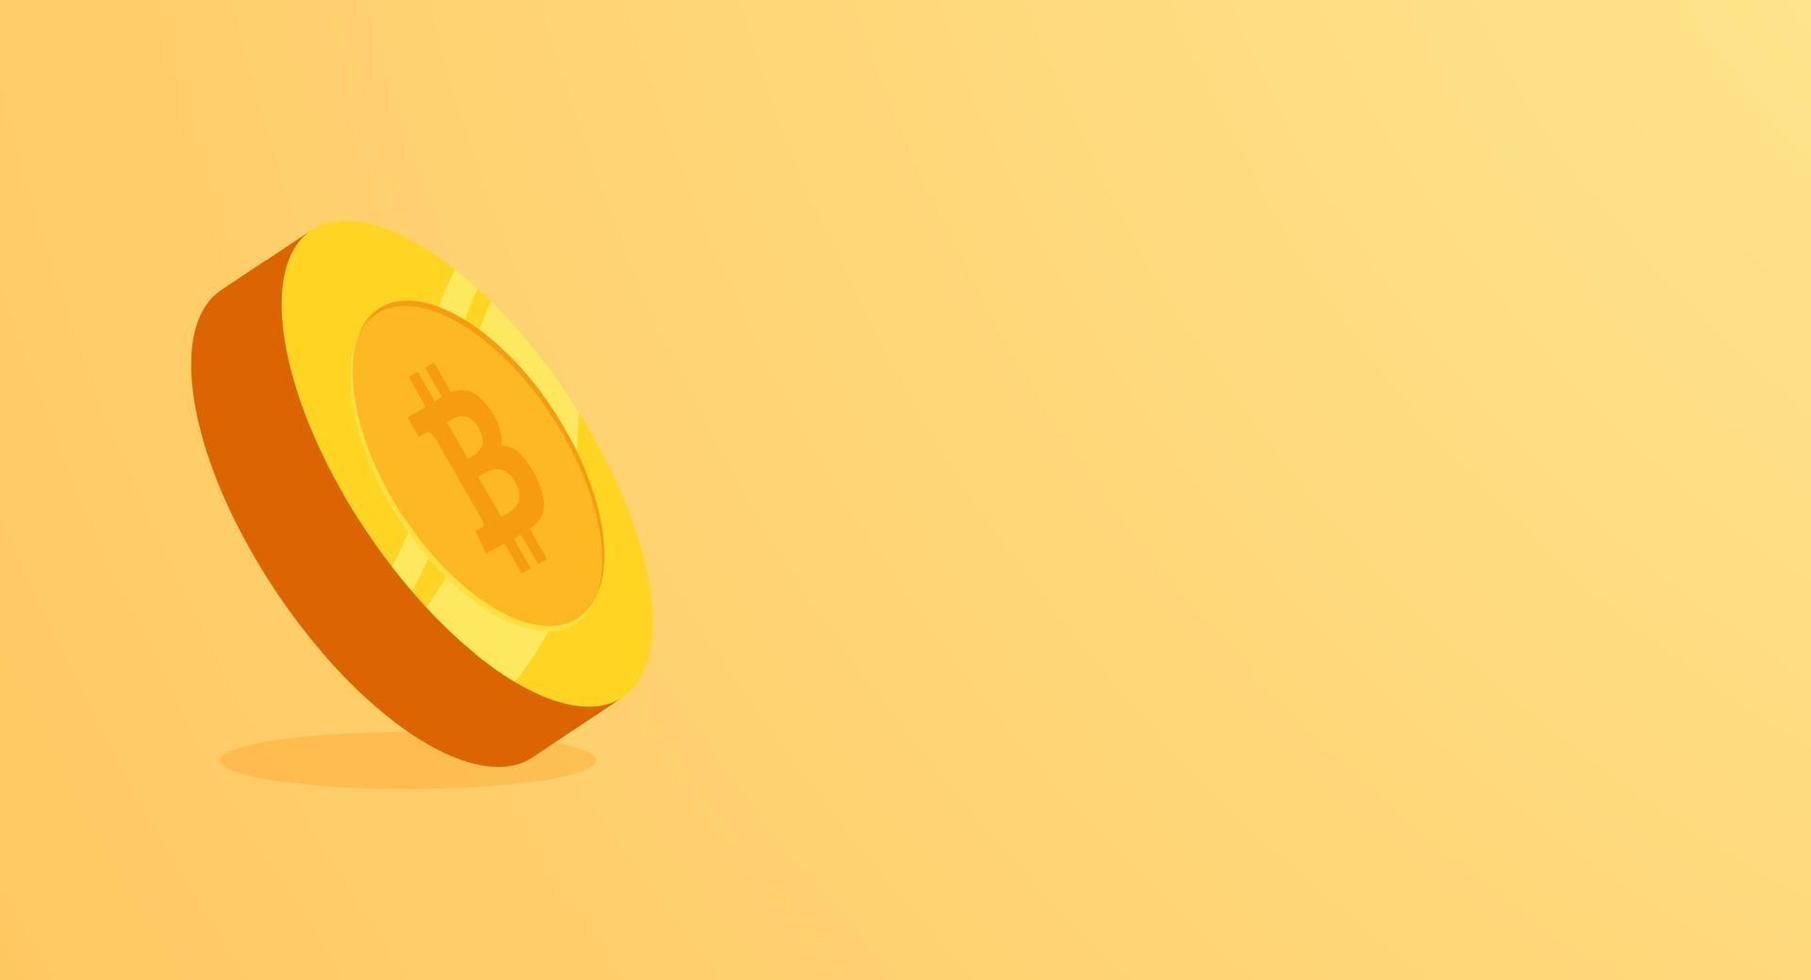 d'oro bitcoin bandiera isolato su giallo sfondo. 3d moneta vettore illustrazione.